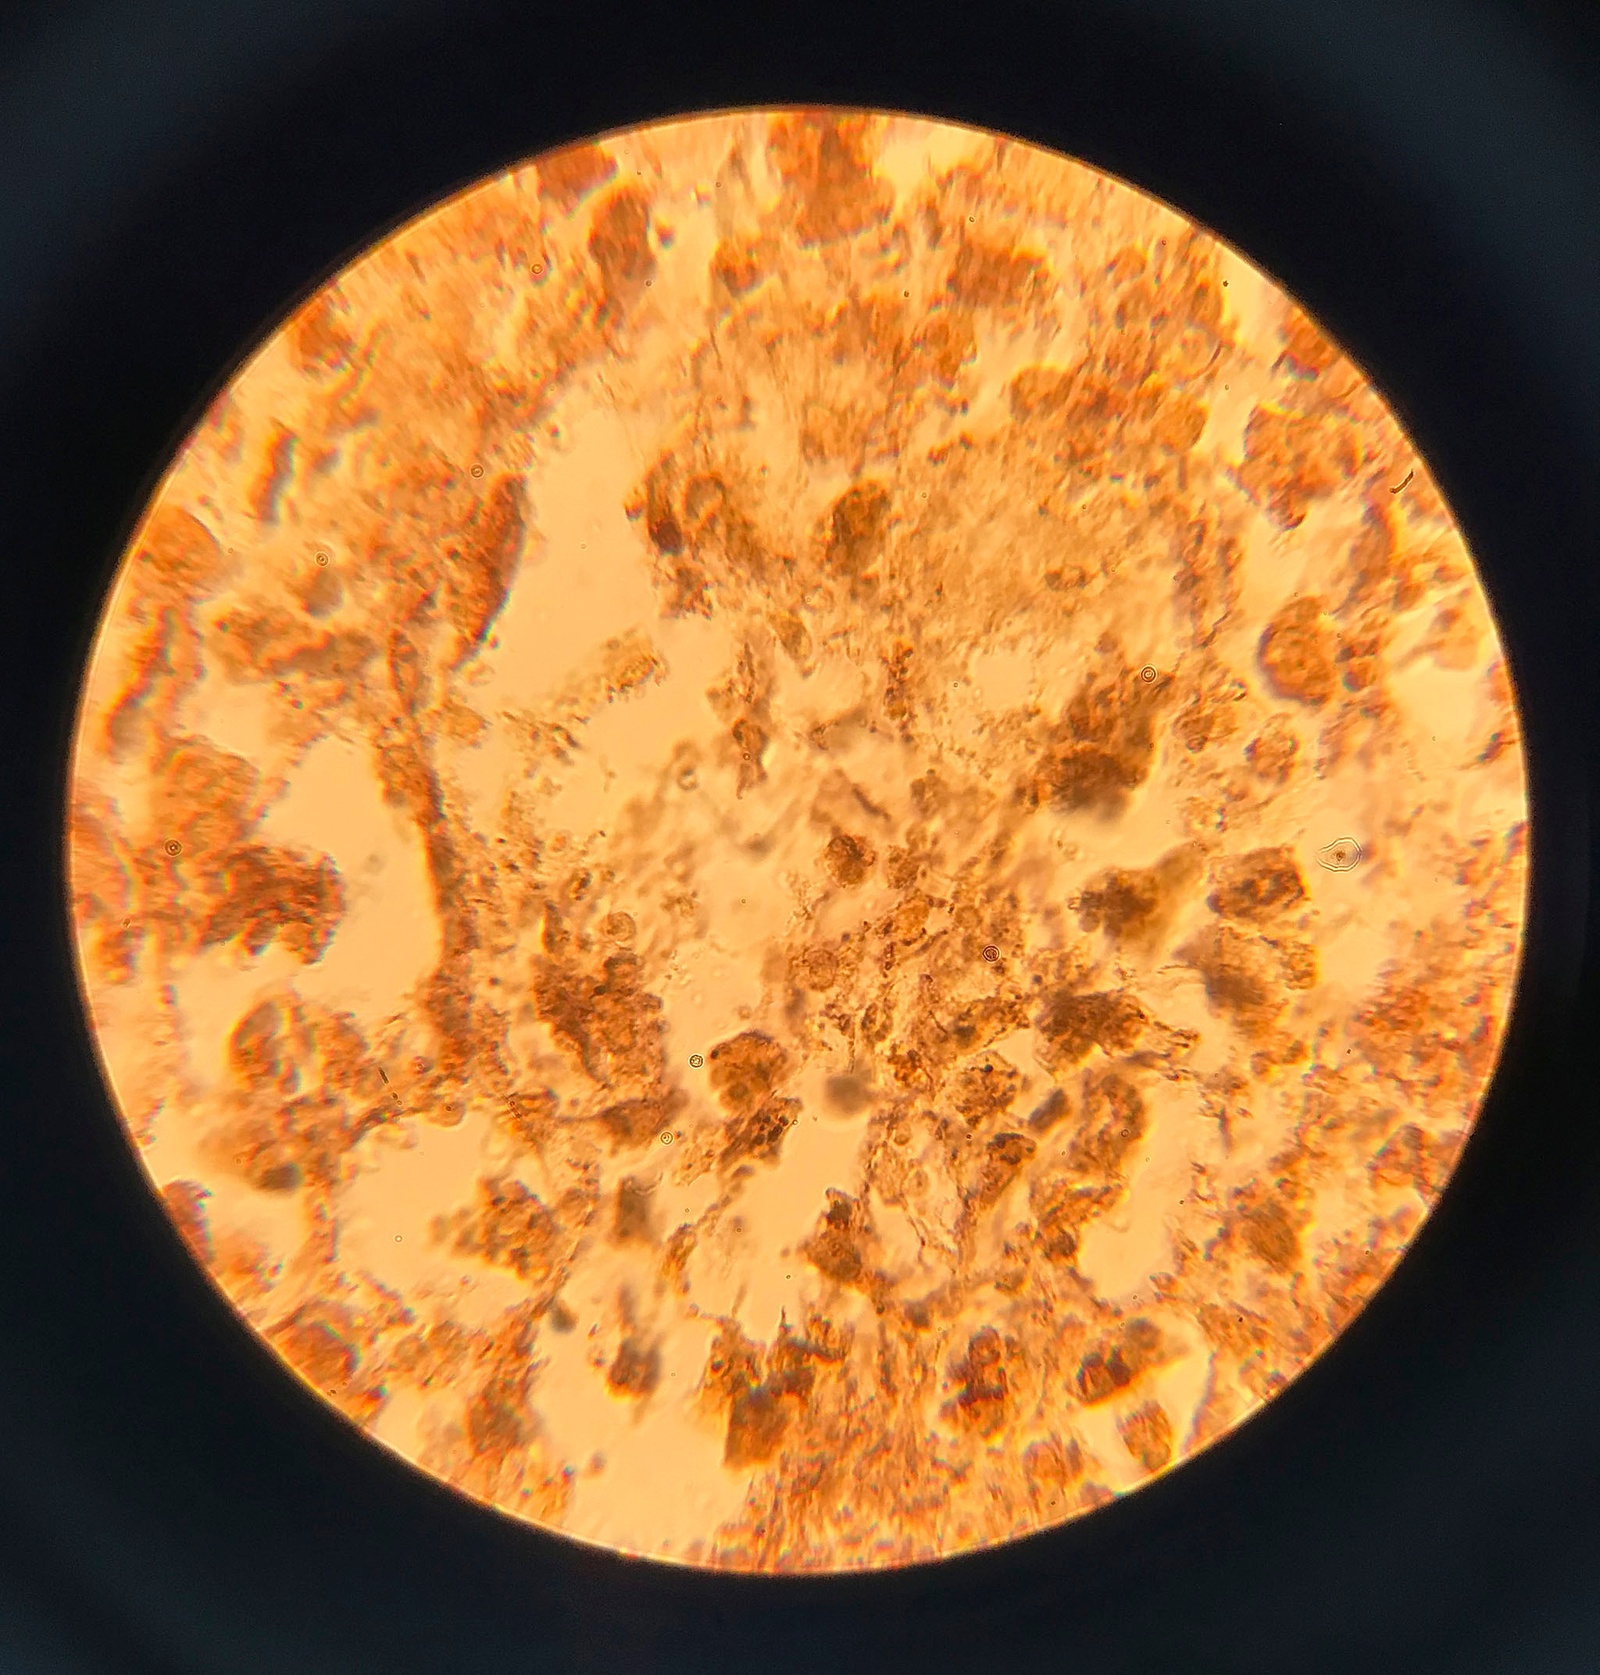 Puppies Puppies (Jade Guanaro Kuriki-Olivo). Treponema pallidum (Syphilis), 2018. glass, treponema pallidum, Bresser Erudite microscope. 32 x 20 x 10 cm